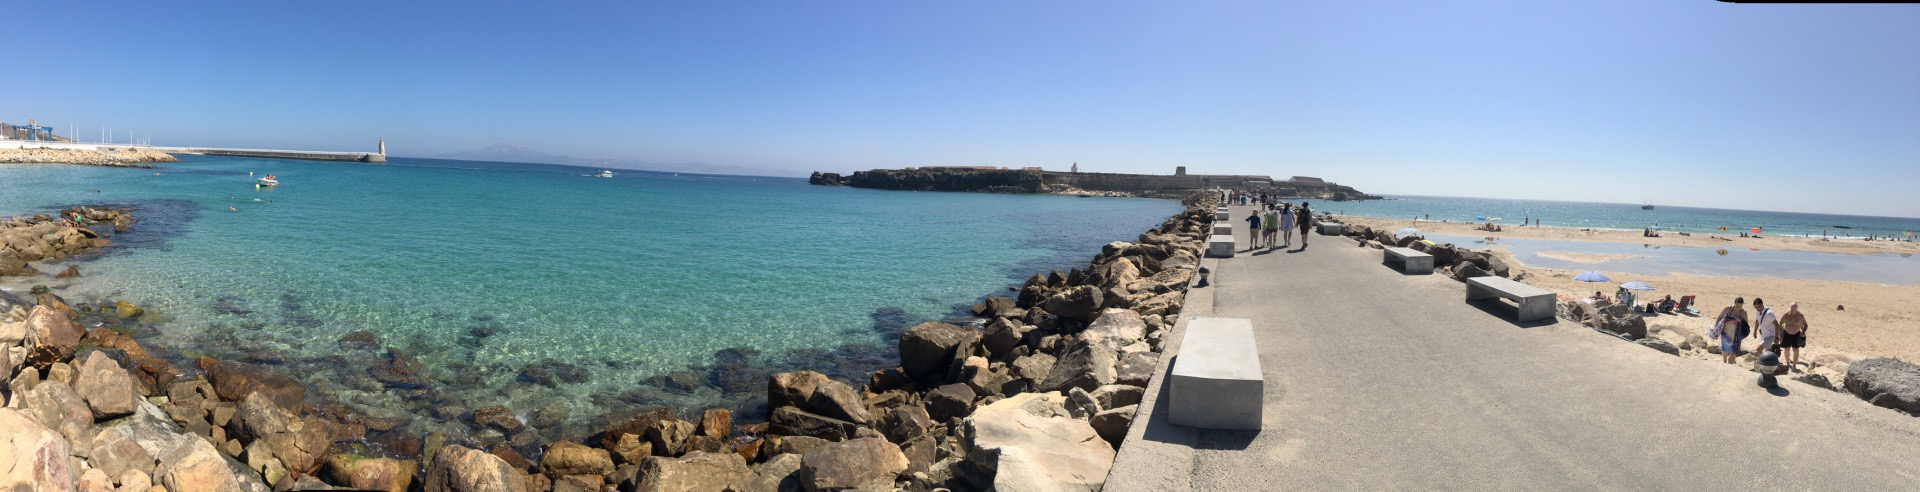 塔理法，是西班牙也是欧洲大陆伸向地中海的最南端。直布罗陀海峡，世界四大黄金水道之一。站在塔理法海岸边